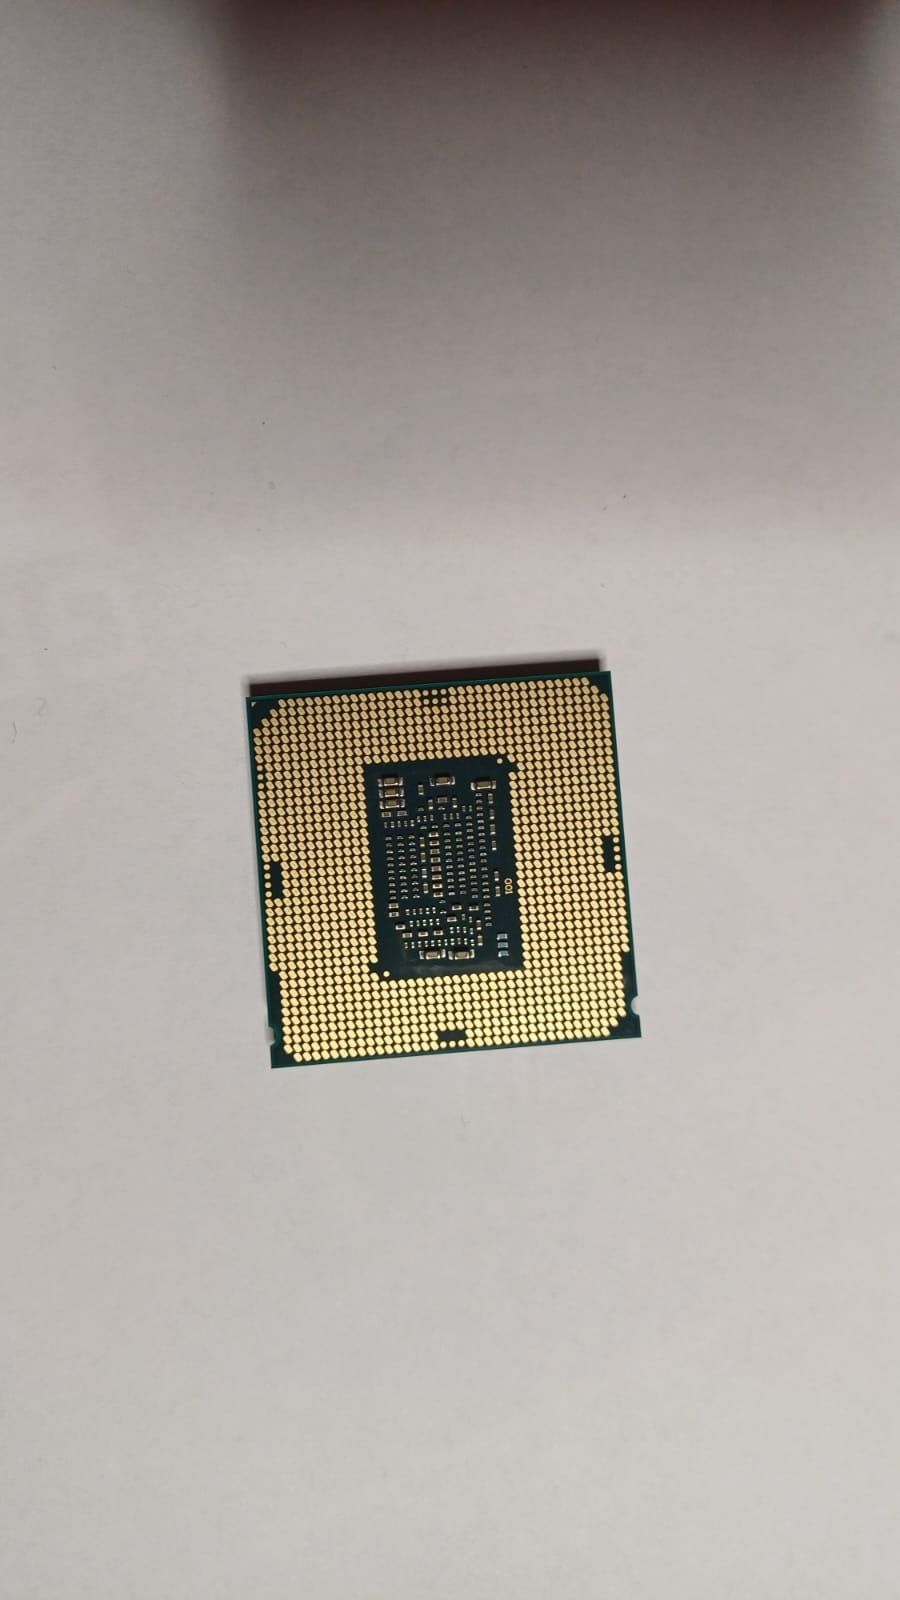 Procecos Intel core i5